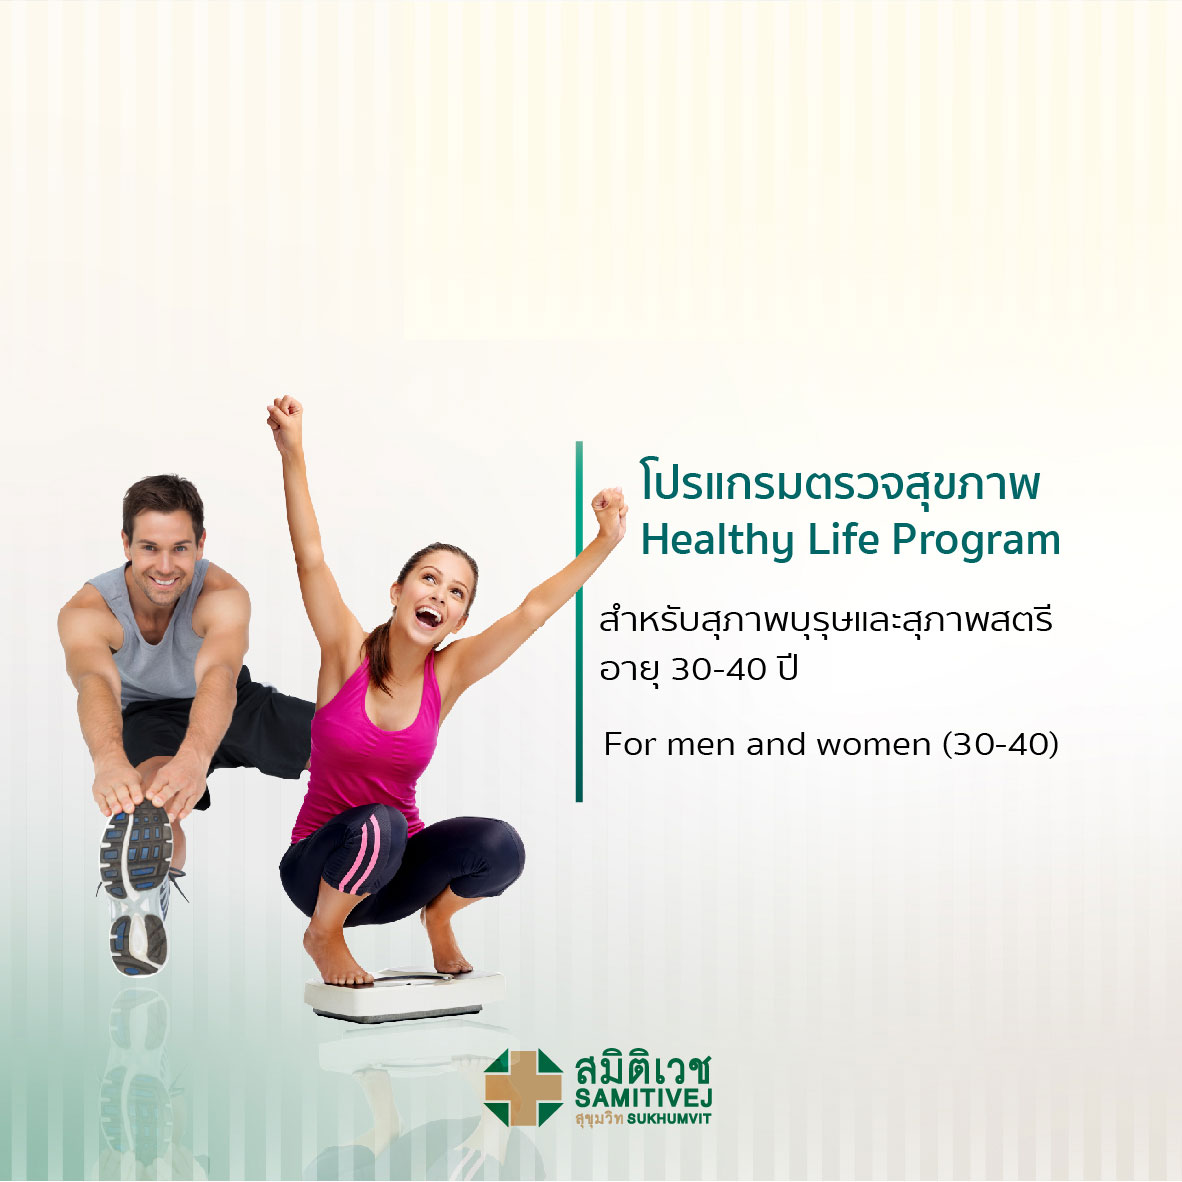 ตรวจสุขภาพเริ่มต้น (สุภาพบุรุษ 30 - 40 ปี) Healthy Life Program - สมิติเวชศรีนครินทร์